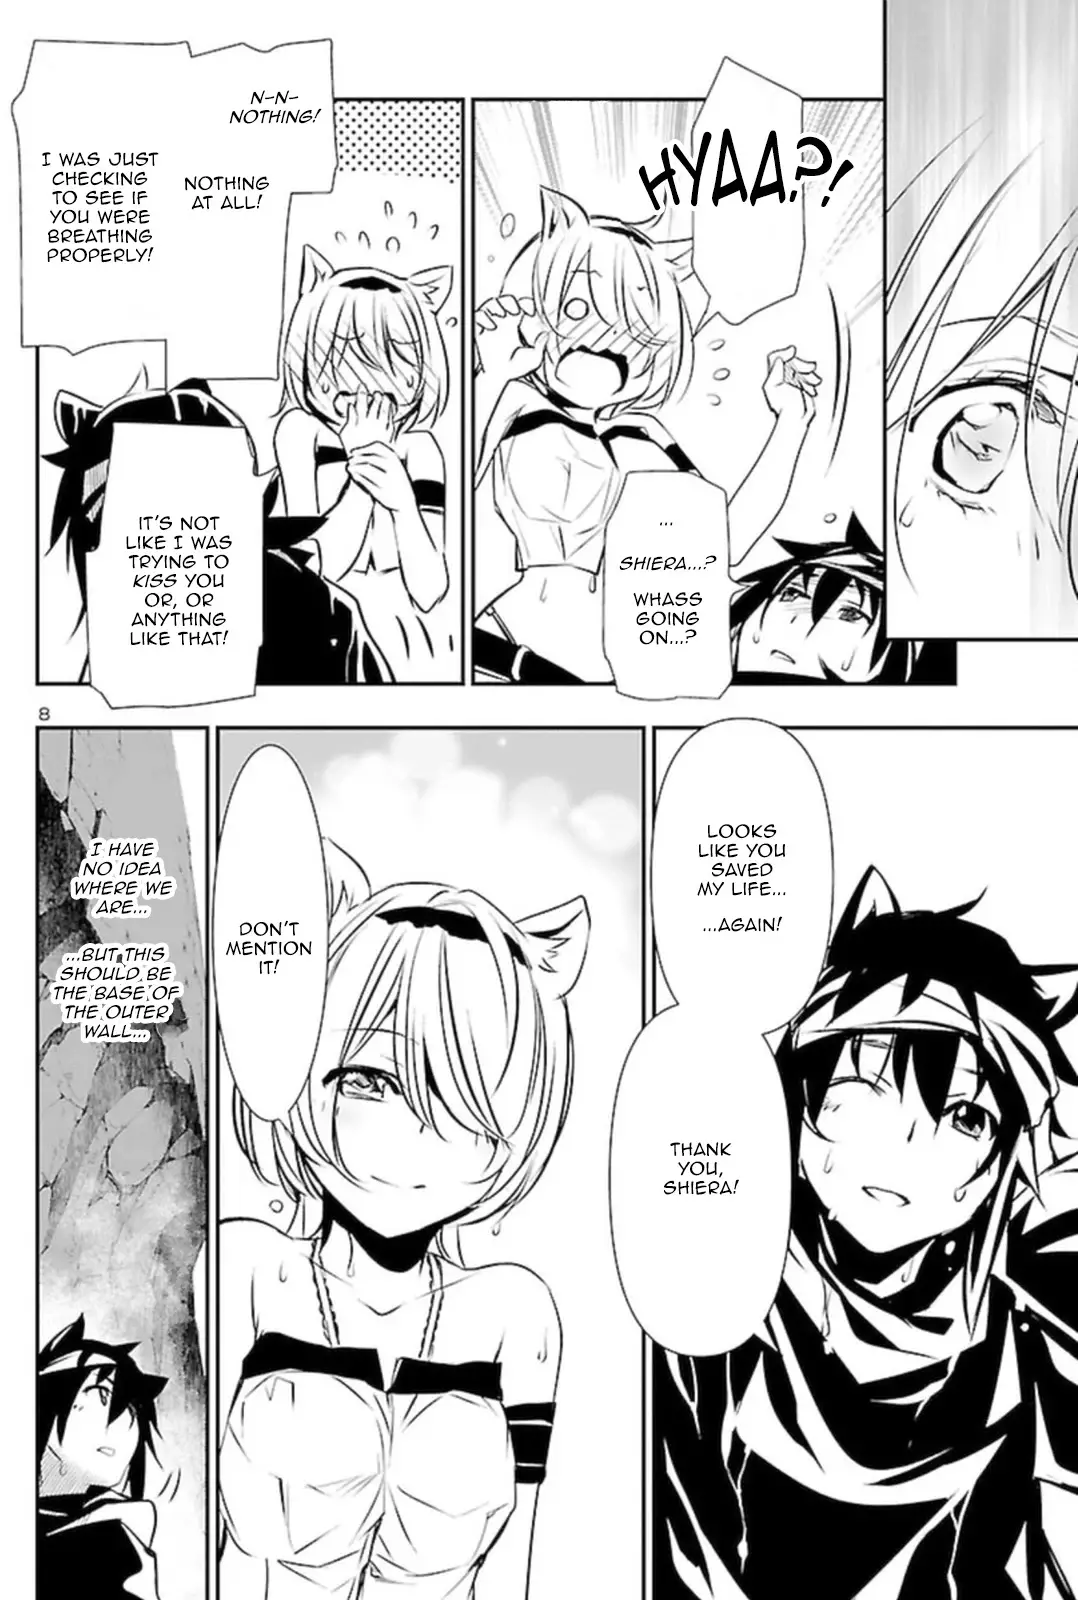 Shinju no Nectar - 53 page 8